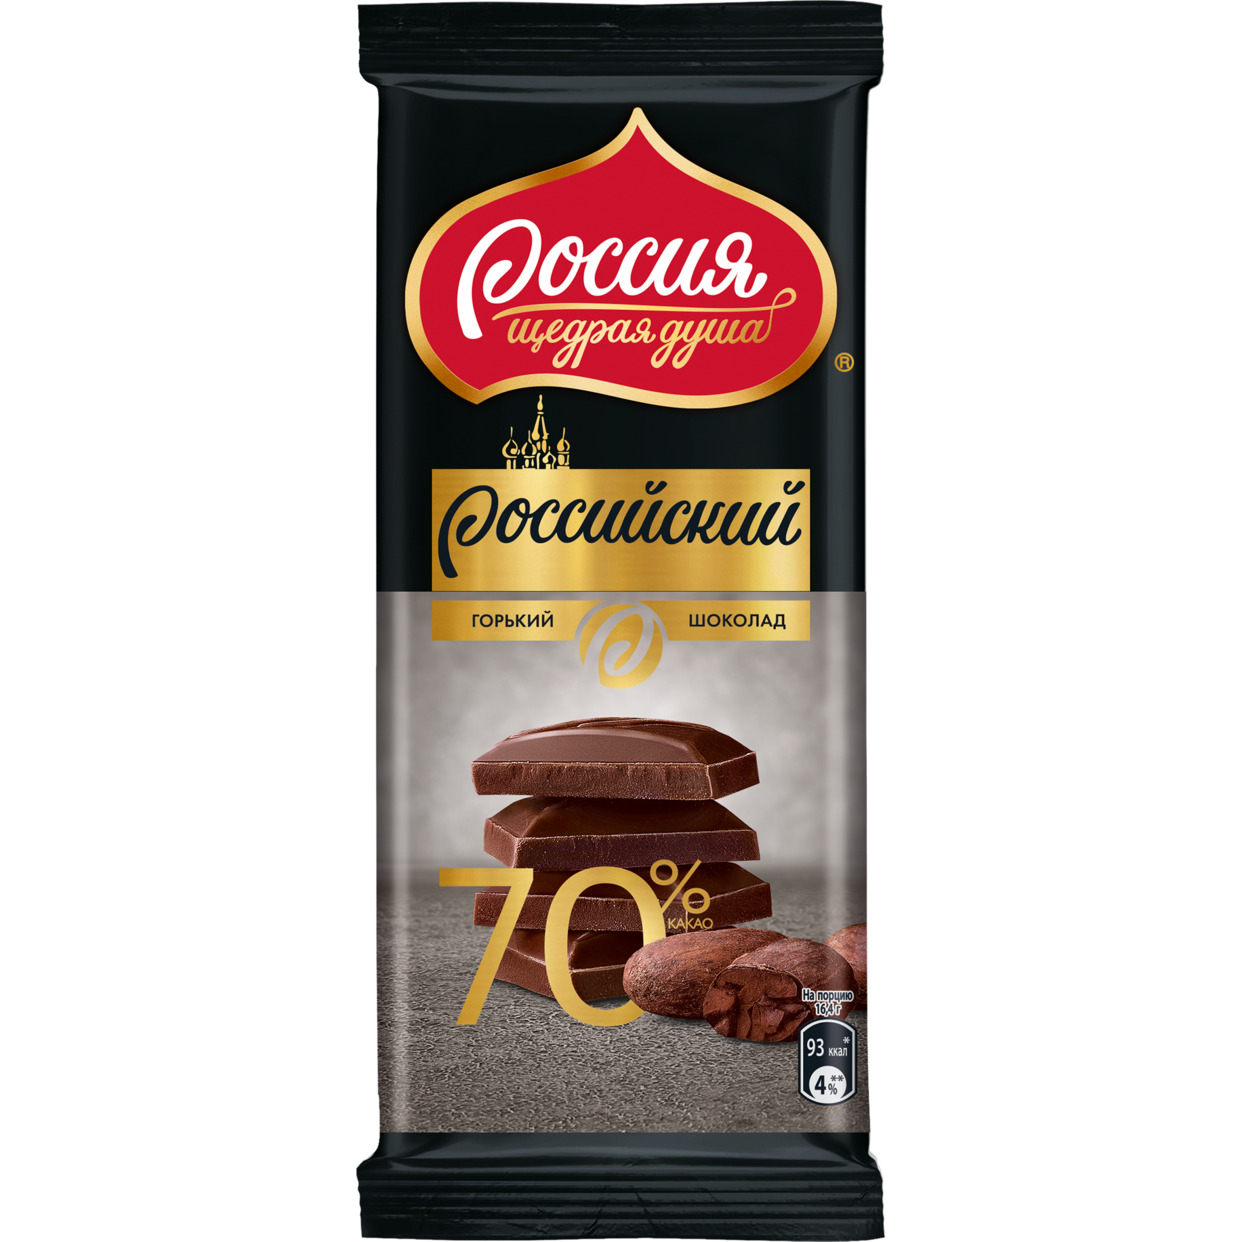 РОССИЙСКИЙ Горький шоколад с 70 % содержанием какао-продуктов 82г по акции в Пятерочке